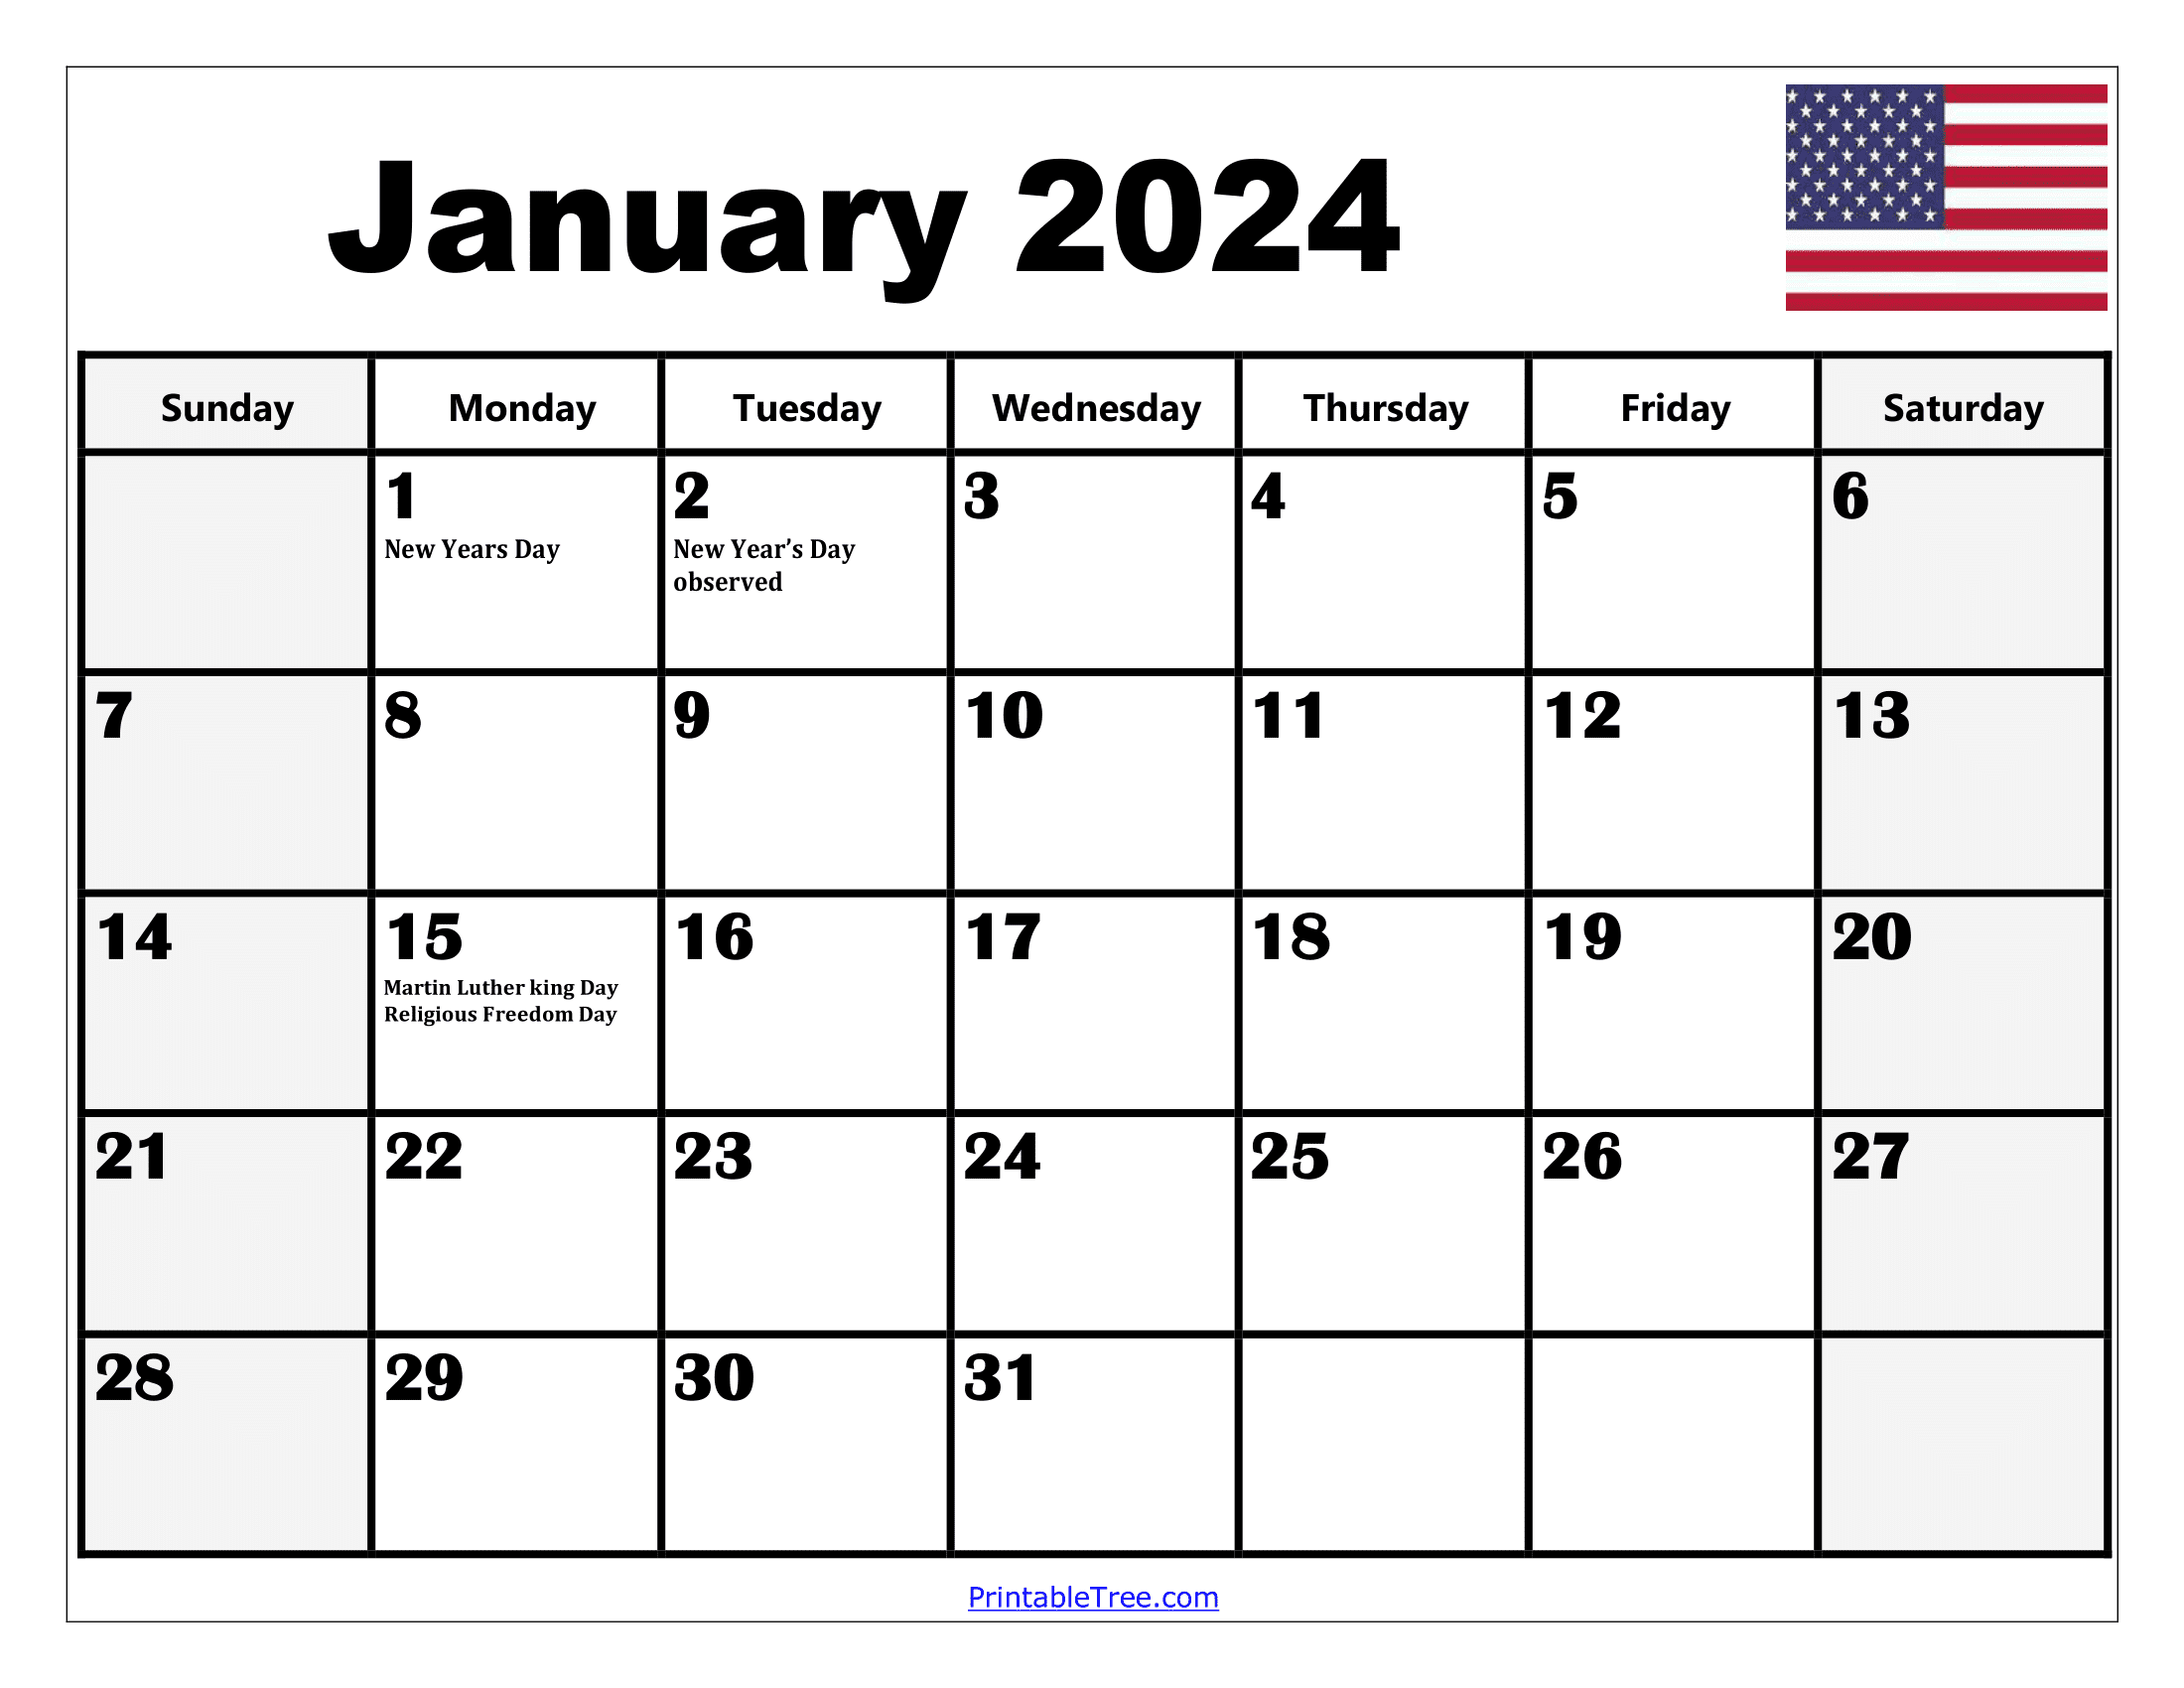 2024 Holiday Calendar Days Free Download Nov 2024 Calendar - Free Printable 2024 Calendar With Holidays 11x17